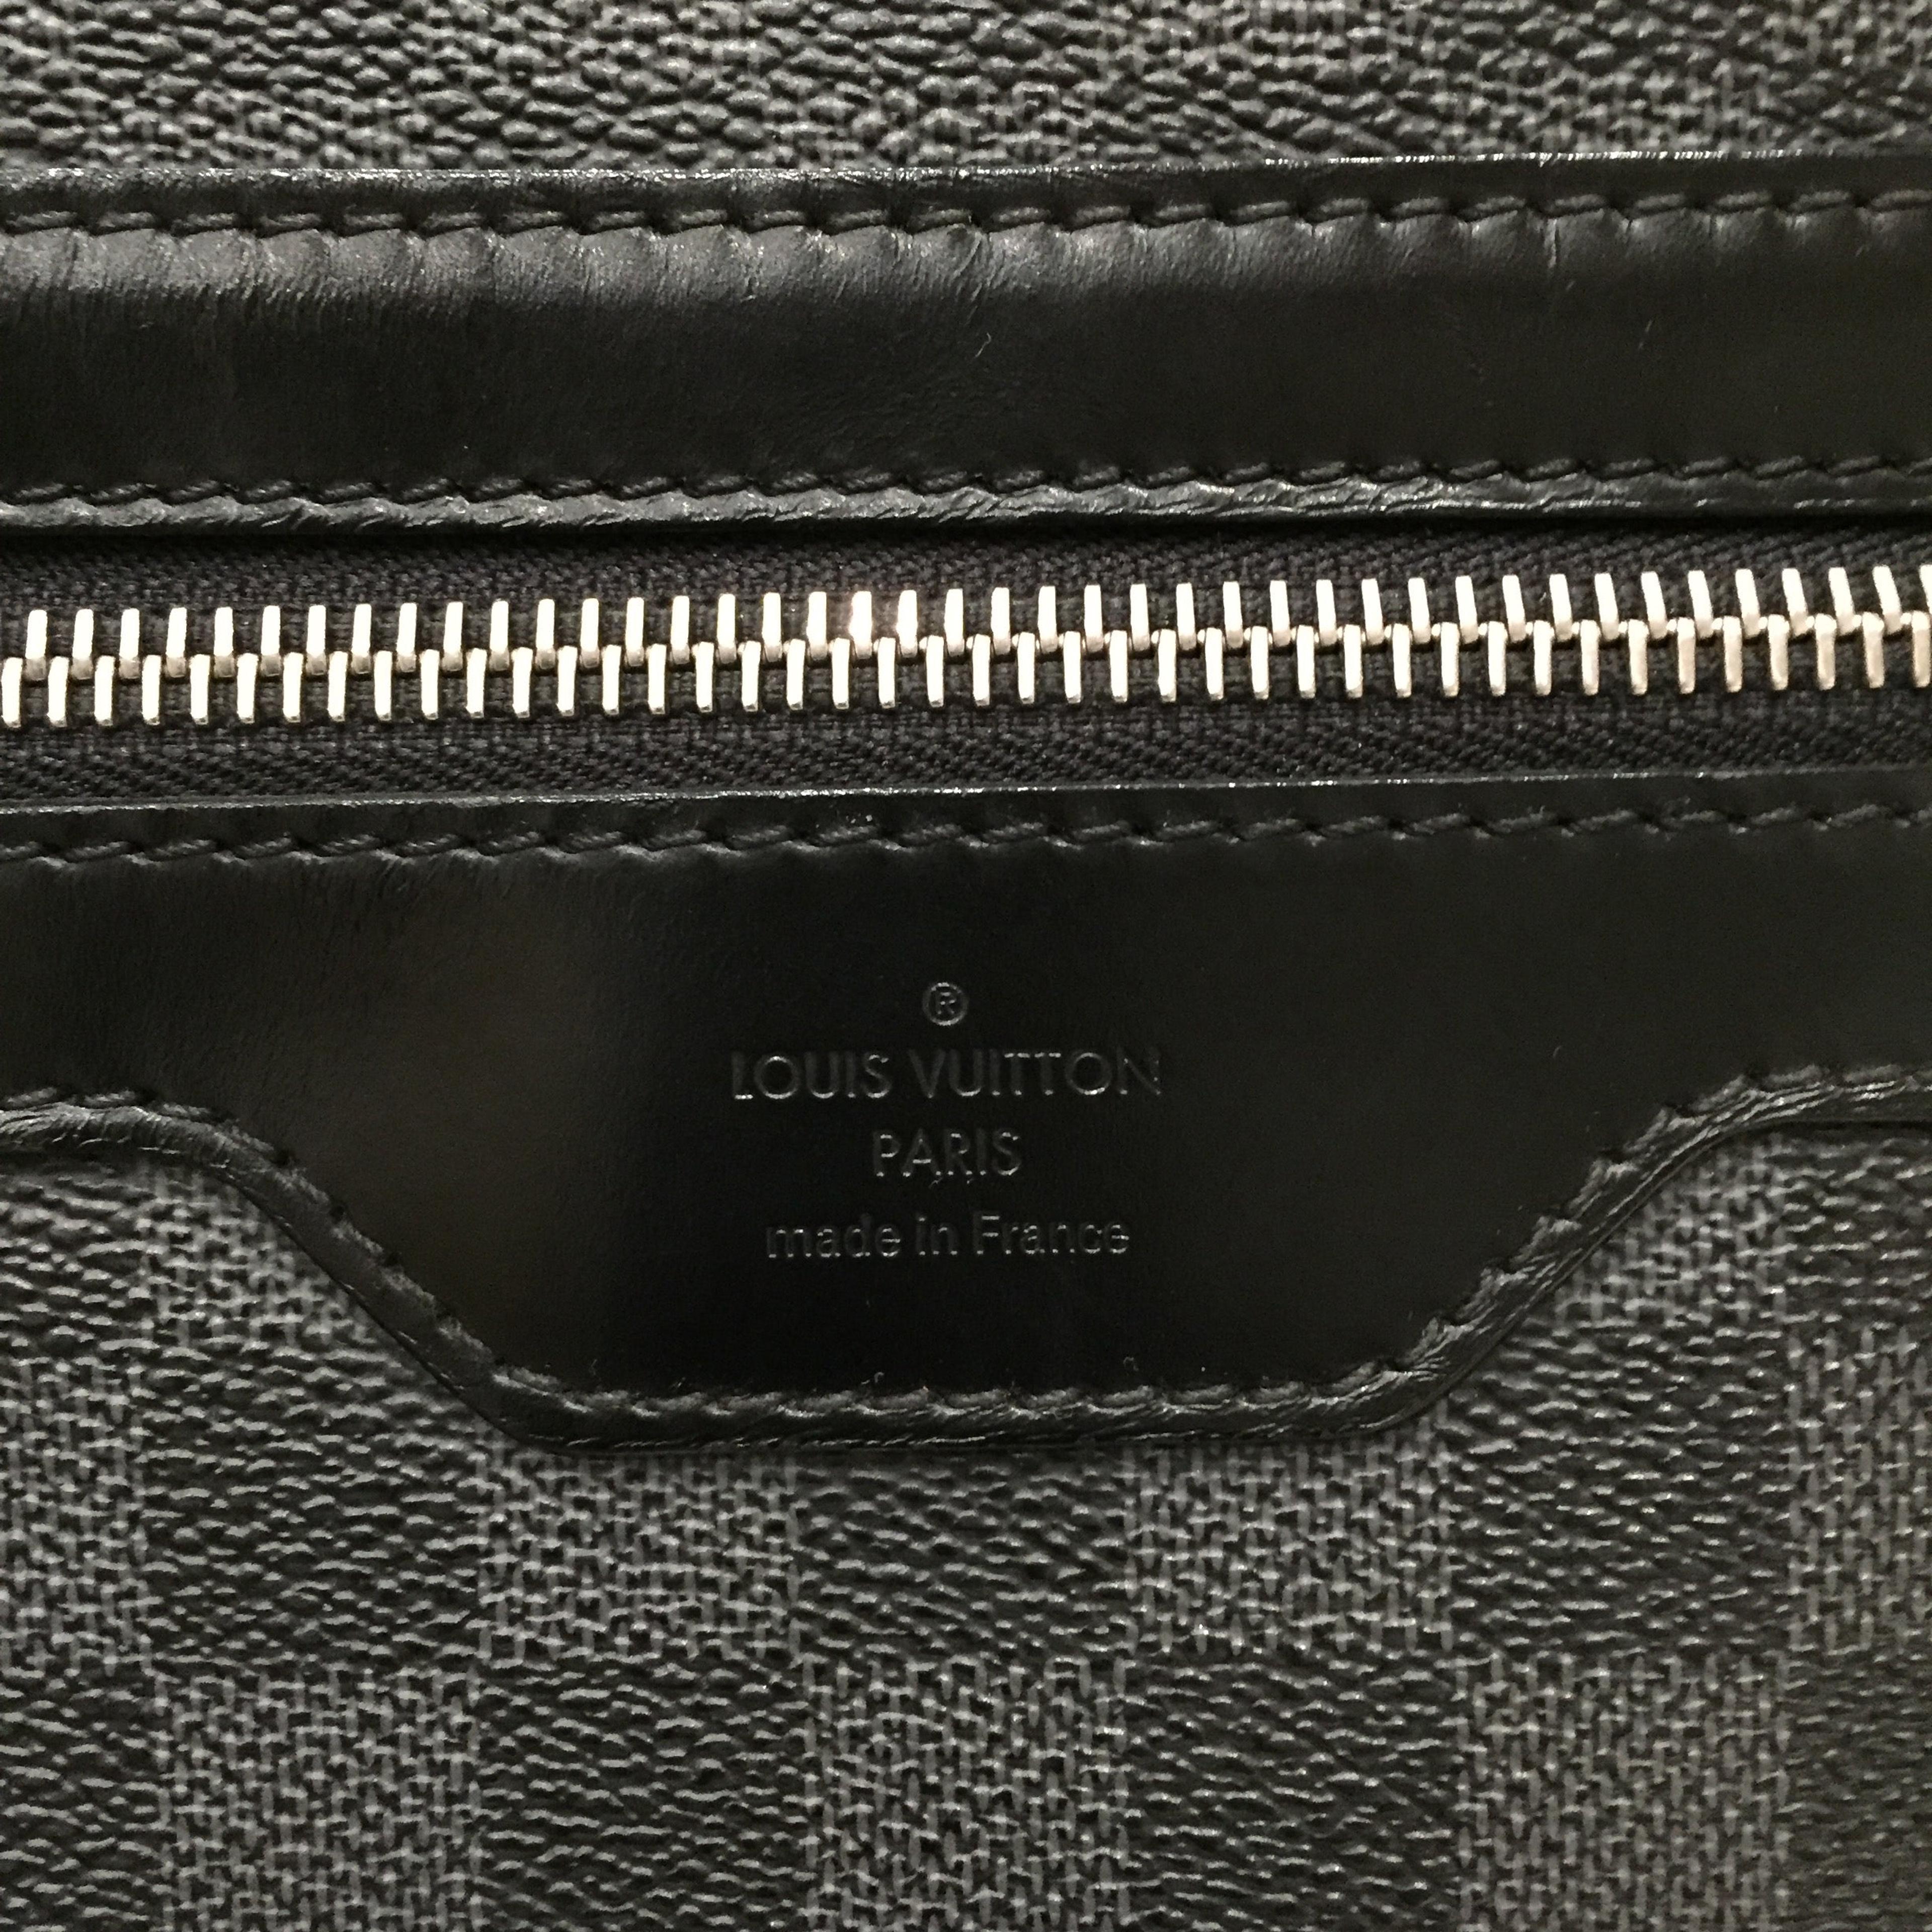 Shop for Louis Vuitton Monogram Canvas Leather Cartouchiere GM